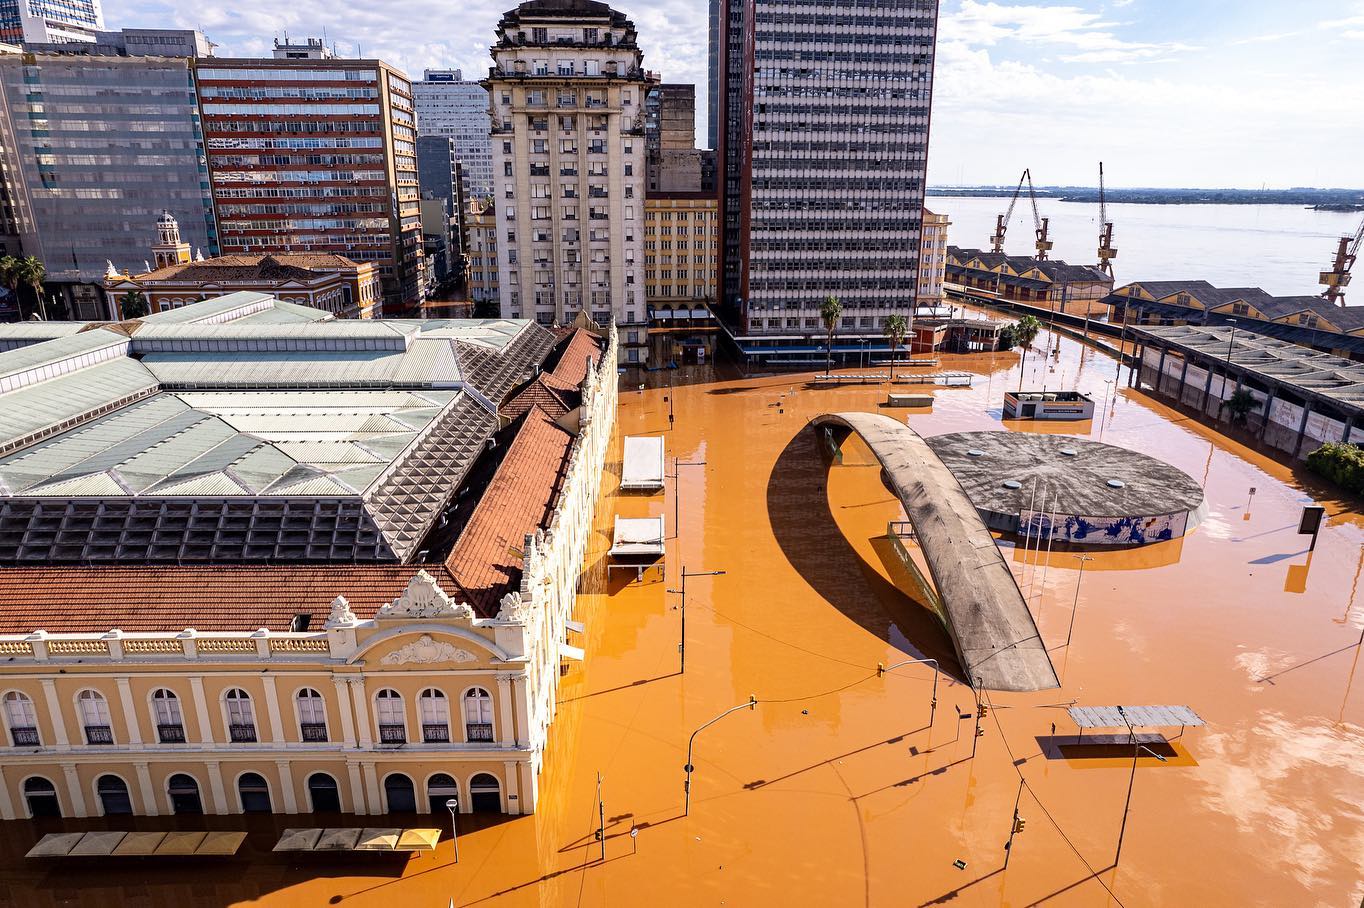 Foto colorida do Centro Histórico de Porto Alegre invadido pelas águas. Na imagem, os prédios estão com água cobrindo suas entradas. A cor de água é marrom e muitas estruturas no canto direito estão submersas. No canto superior direito, ao fundo é possível ver o Guaíba.